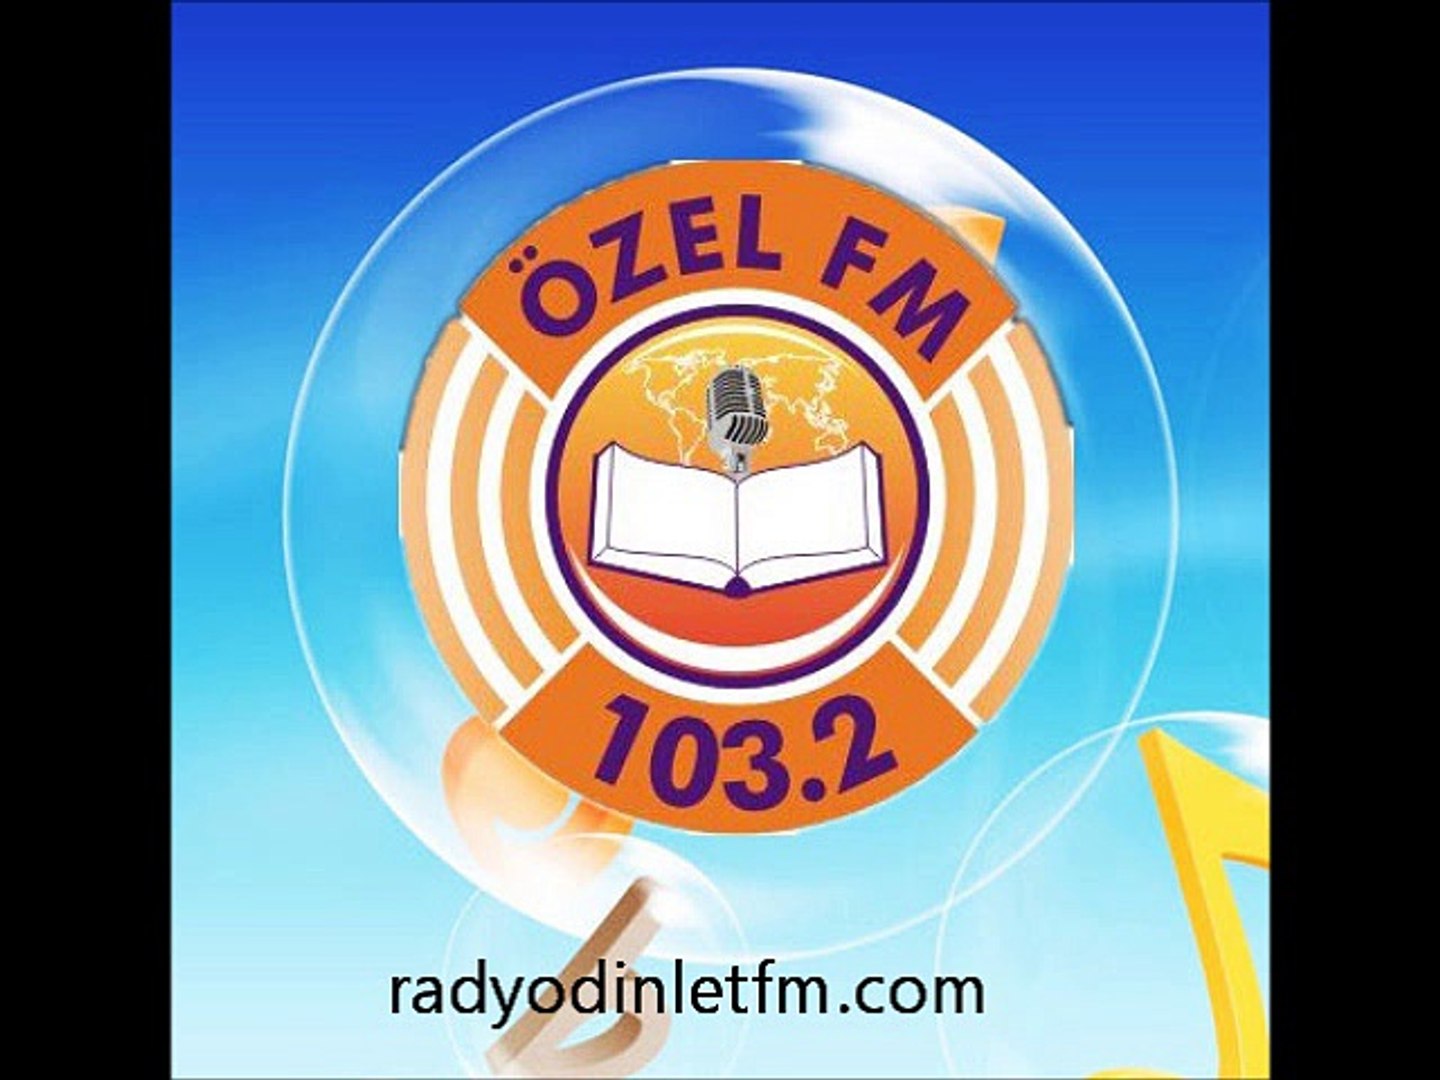 Radyo Özel Fm Dinle - Dailymotion Video